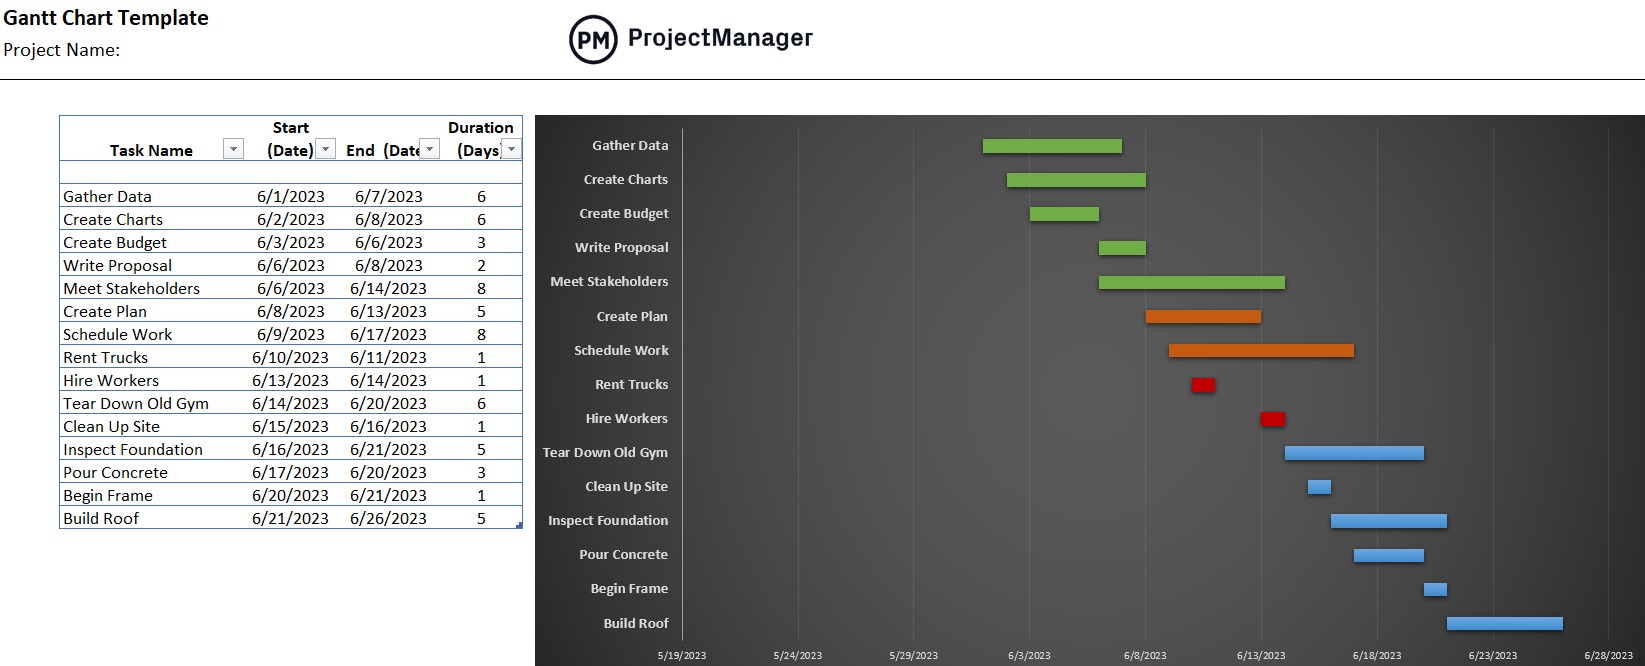 ProjectManager's Gantt Chart template